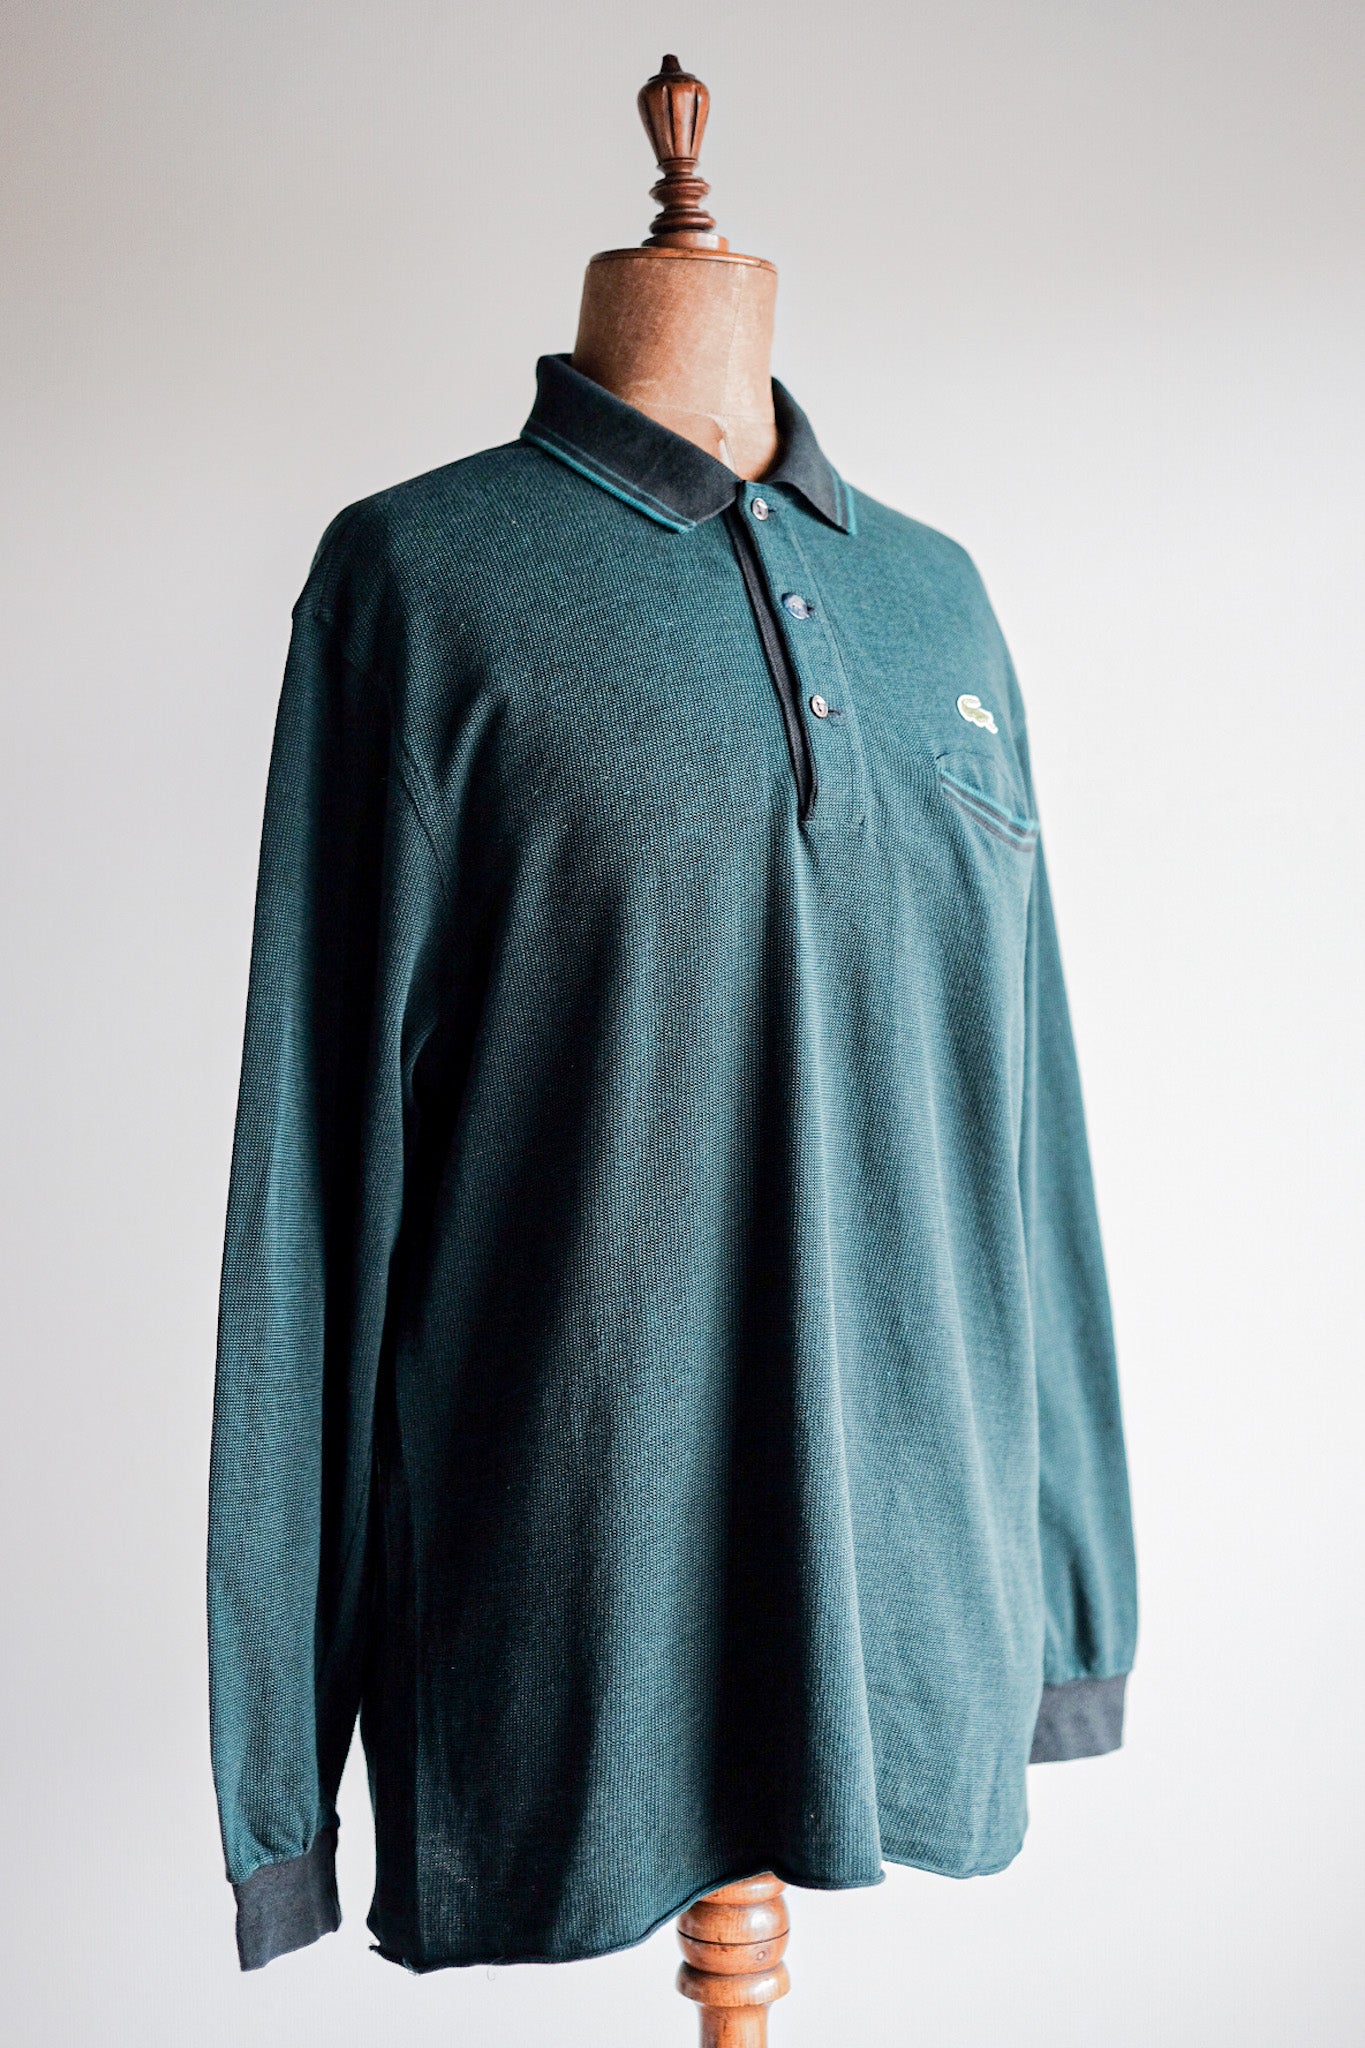 [〜80年代]顏色的lacoste l/s polo襯衫尺寸。5“多色”